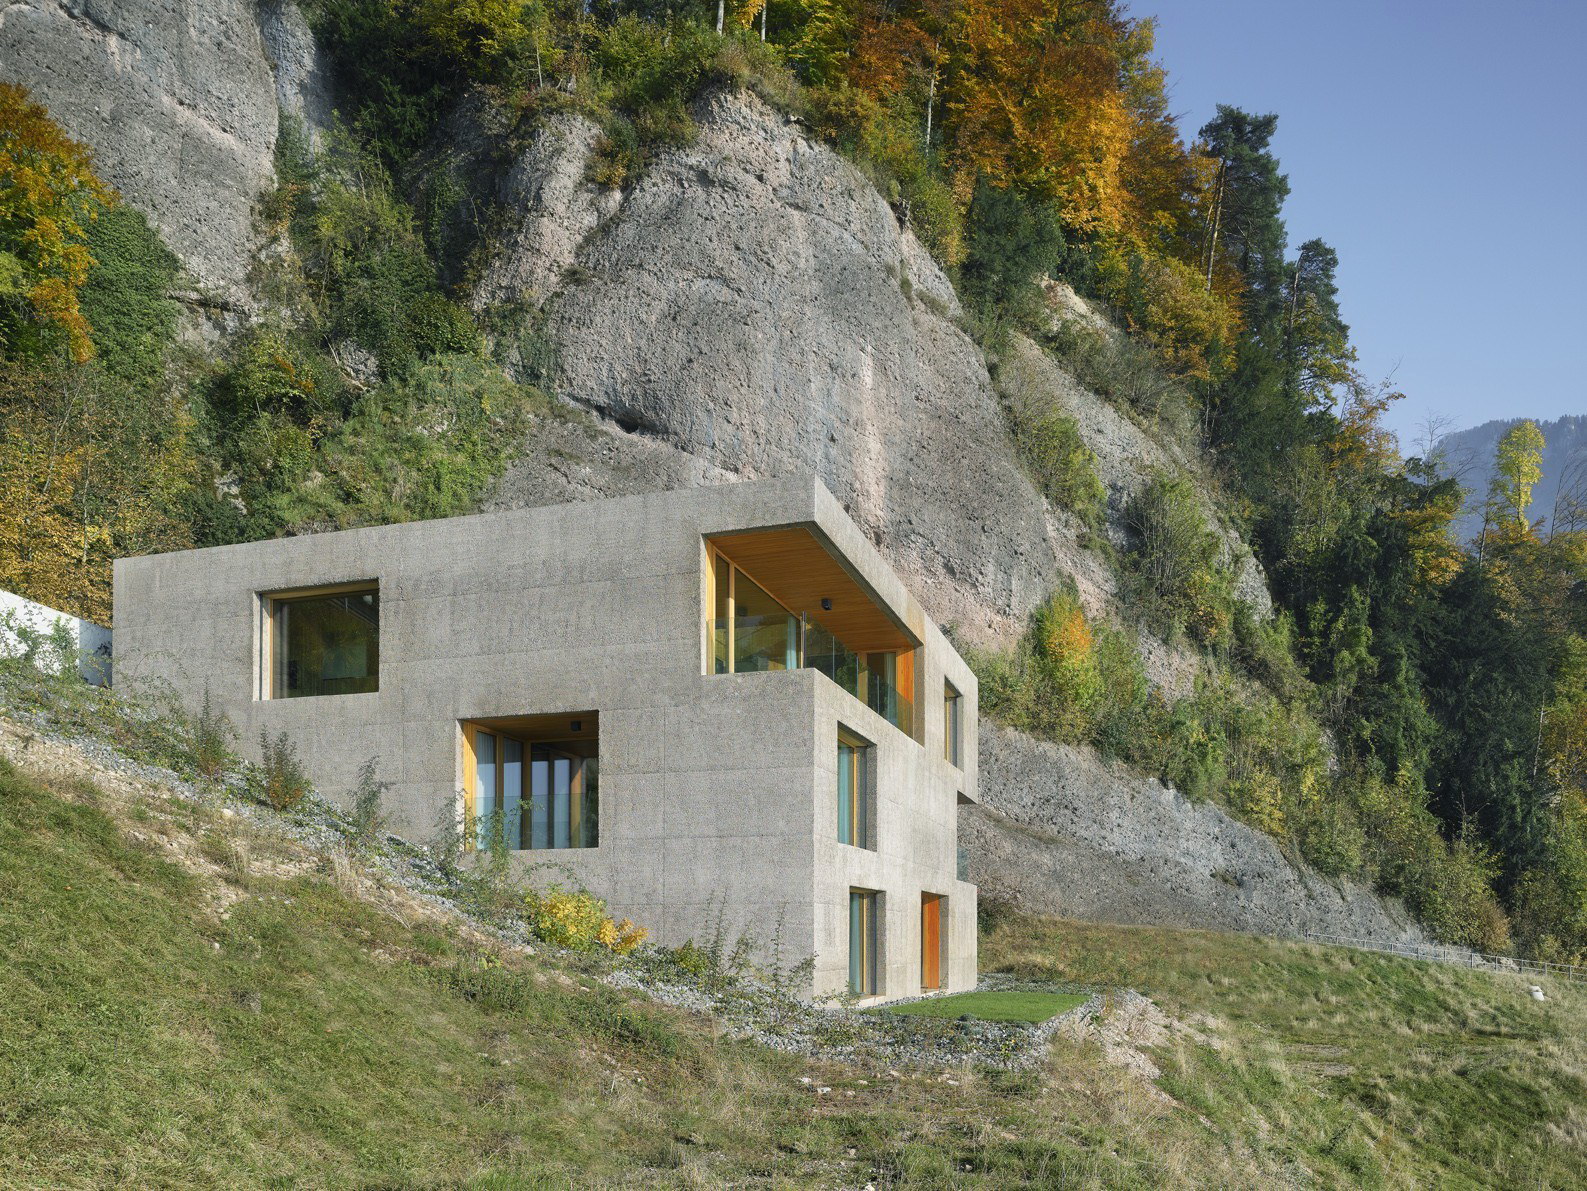 Горная дом 3. Отель на склоне горы Иджеван. Дом на Скалистом склоне в Венгрии. Швейцария ЭКОДОМ. Дом на крутом склоне горы в сейсмозоне.